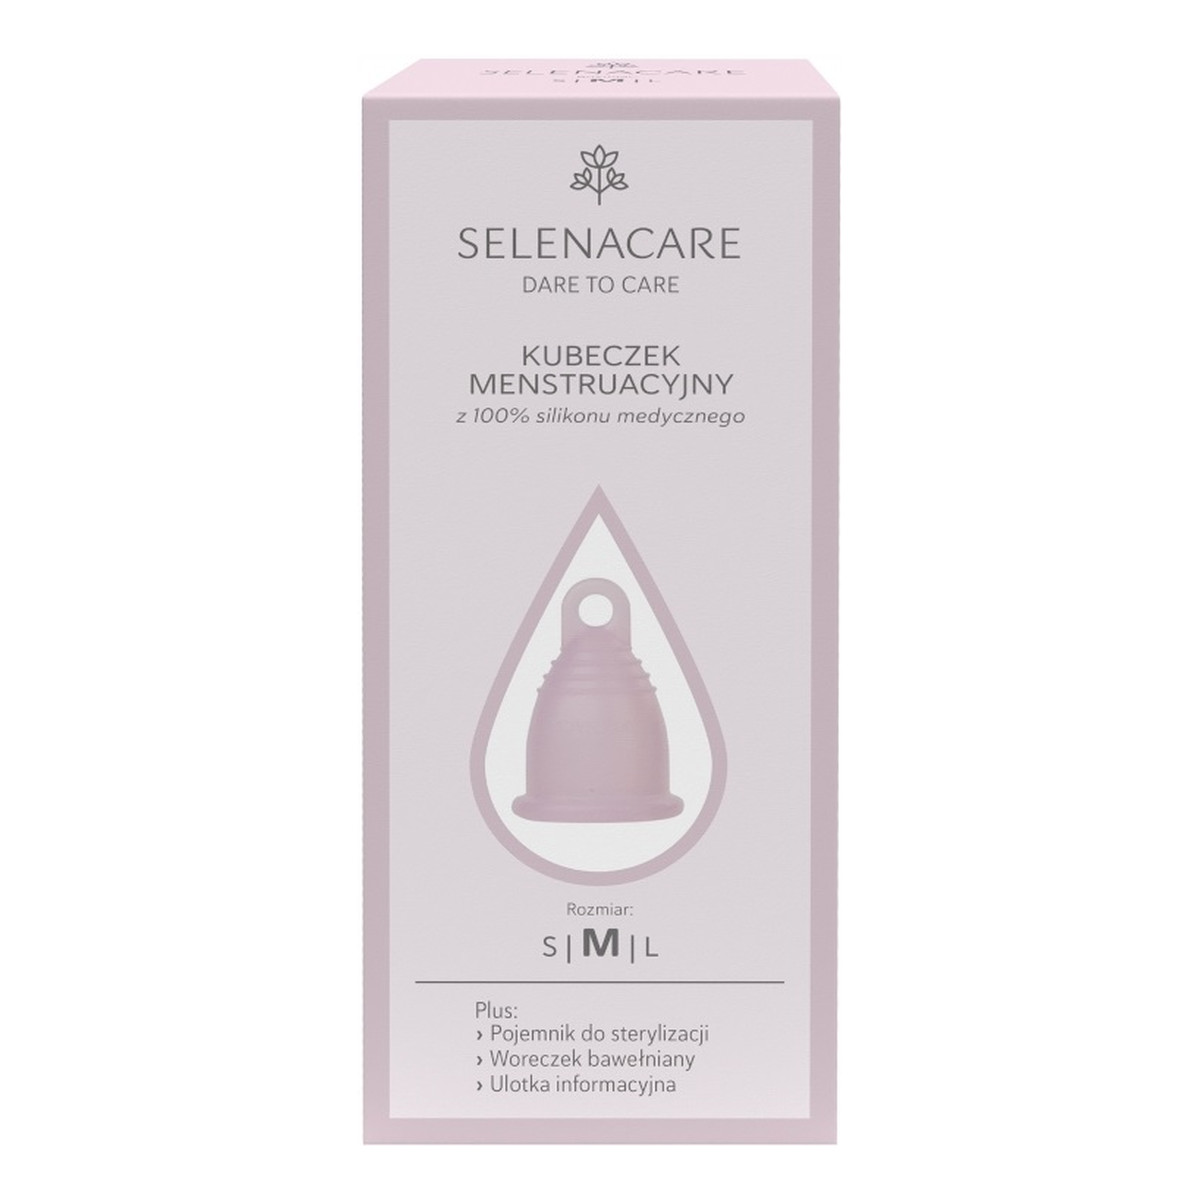 Selenacare Premium kubeczek menstruacyjny z silikonu medycznego m